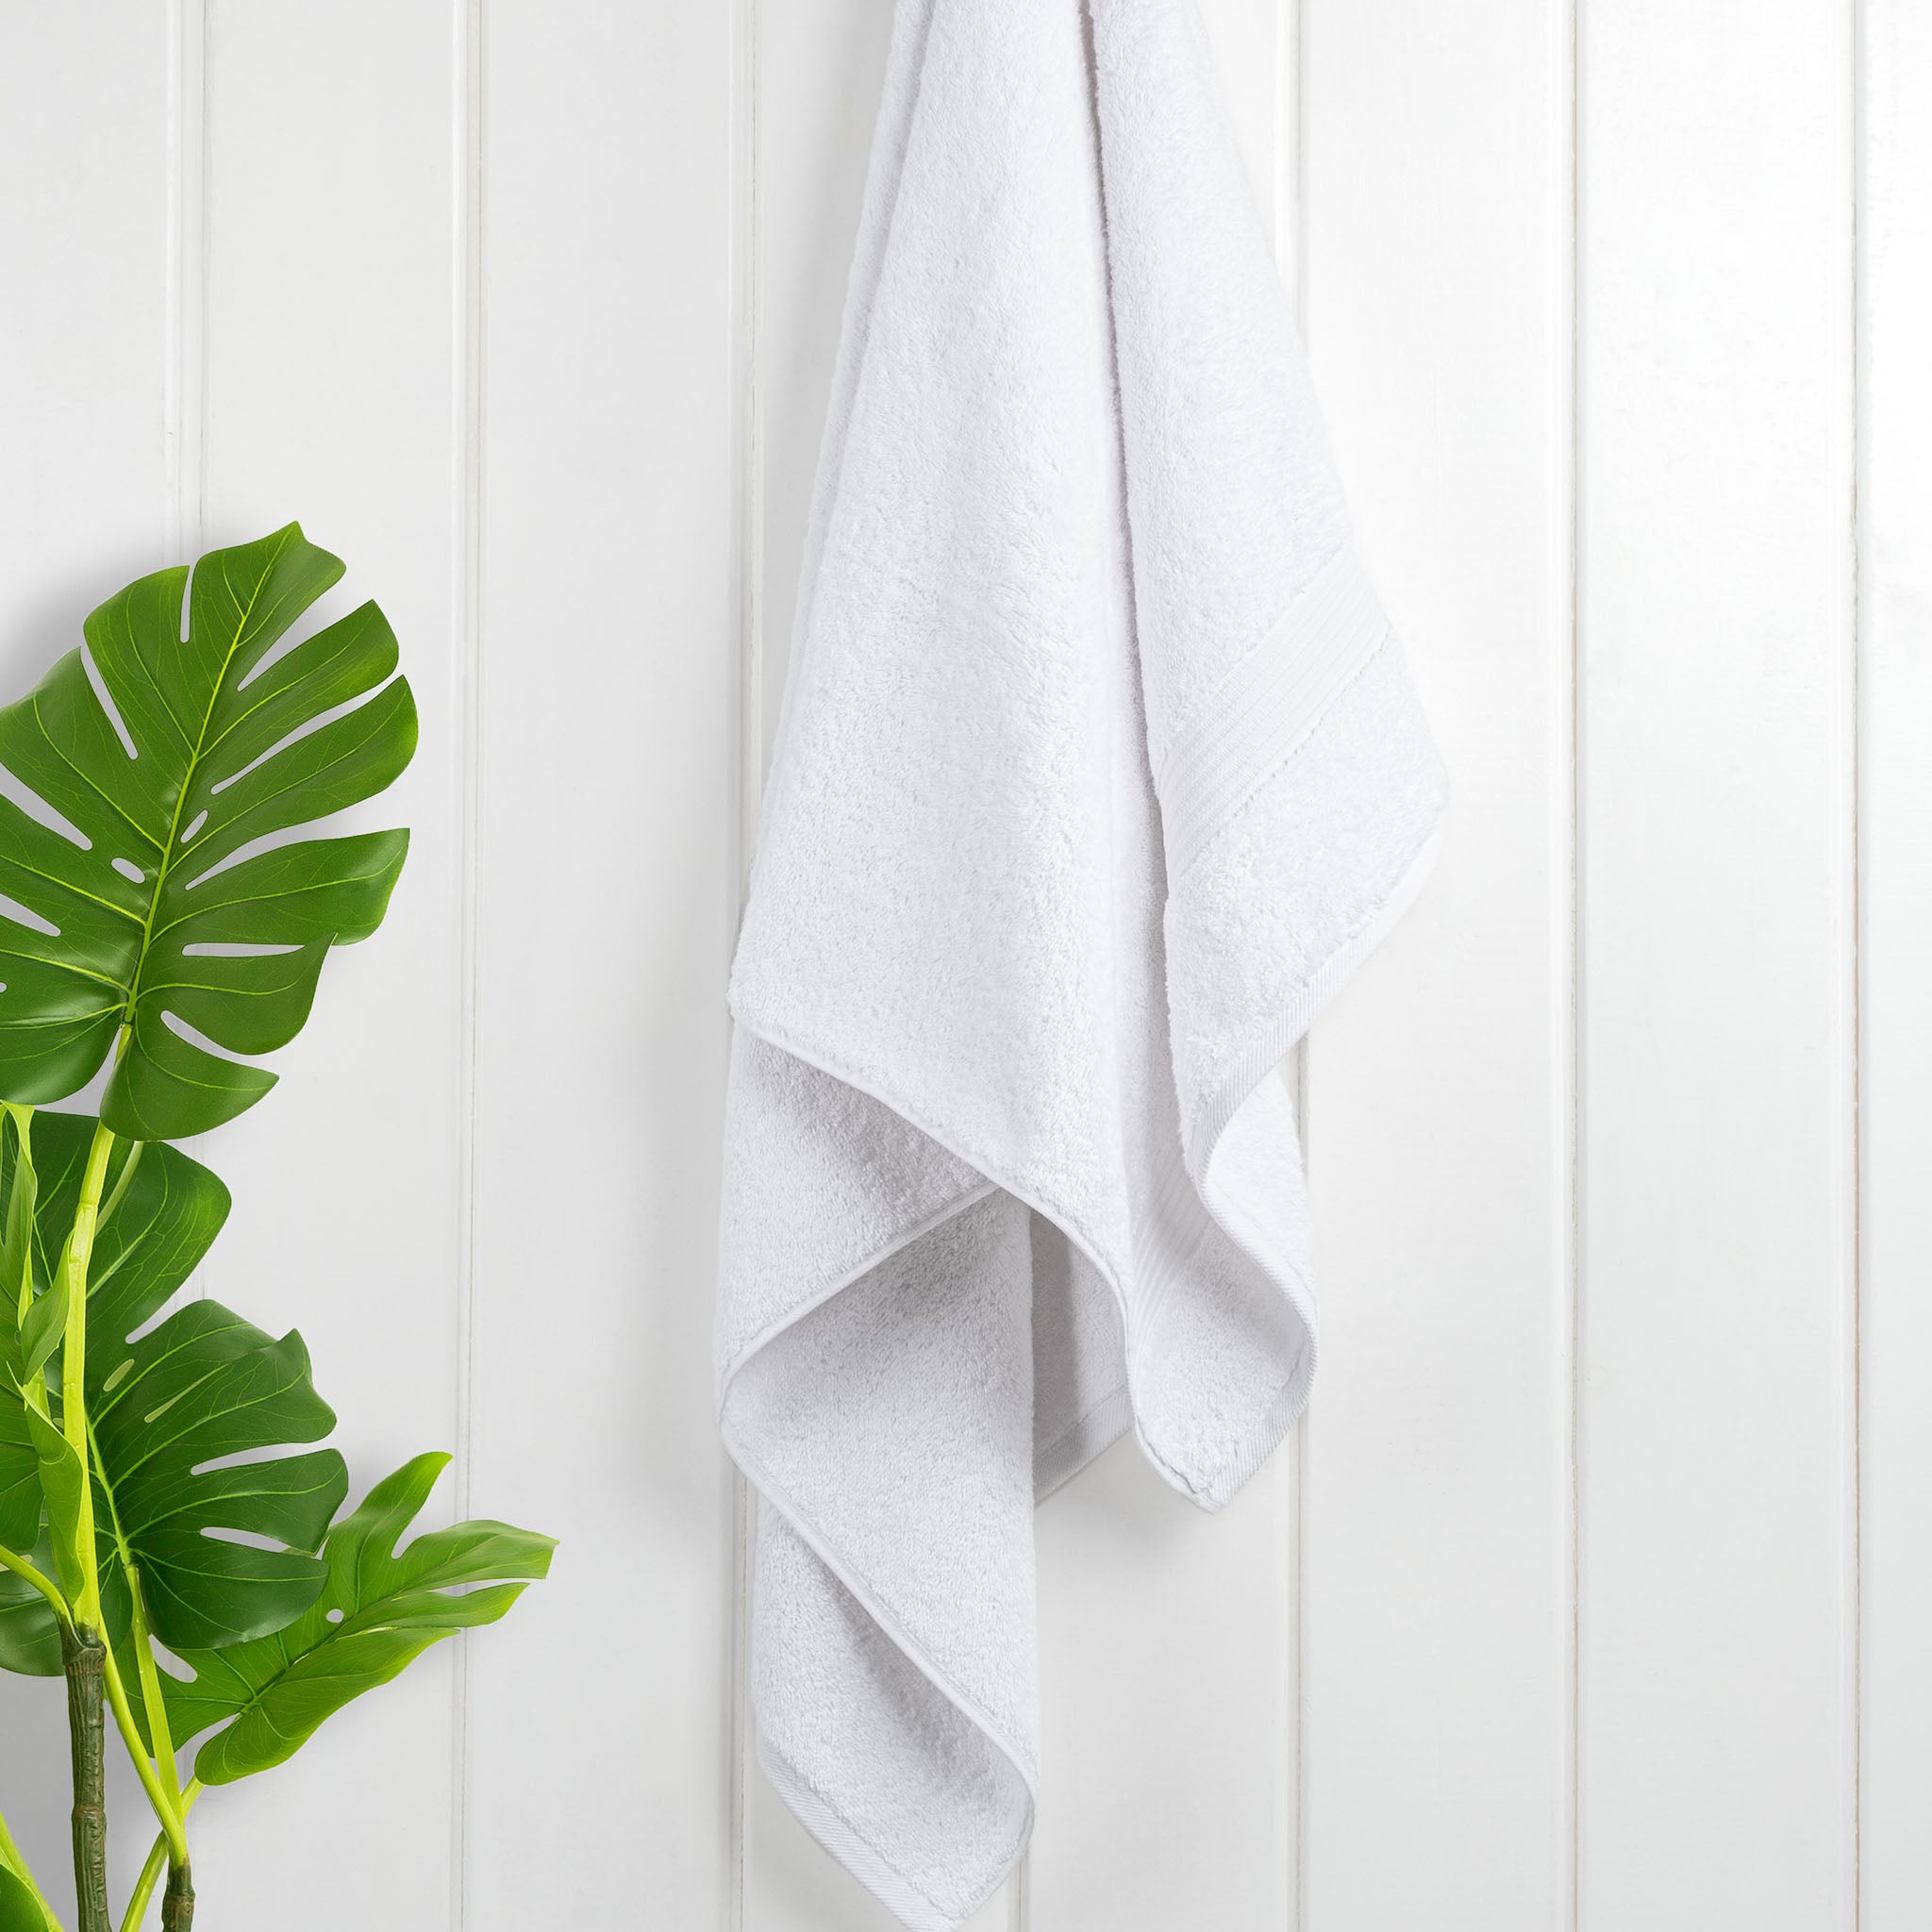 American Soft Linen Bekos 100% Cotton Turkish Towels, 4 Piece Bath Towel Set -turquoise-white-02